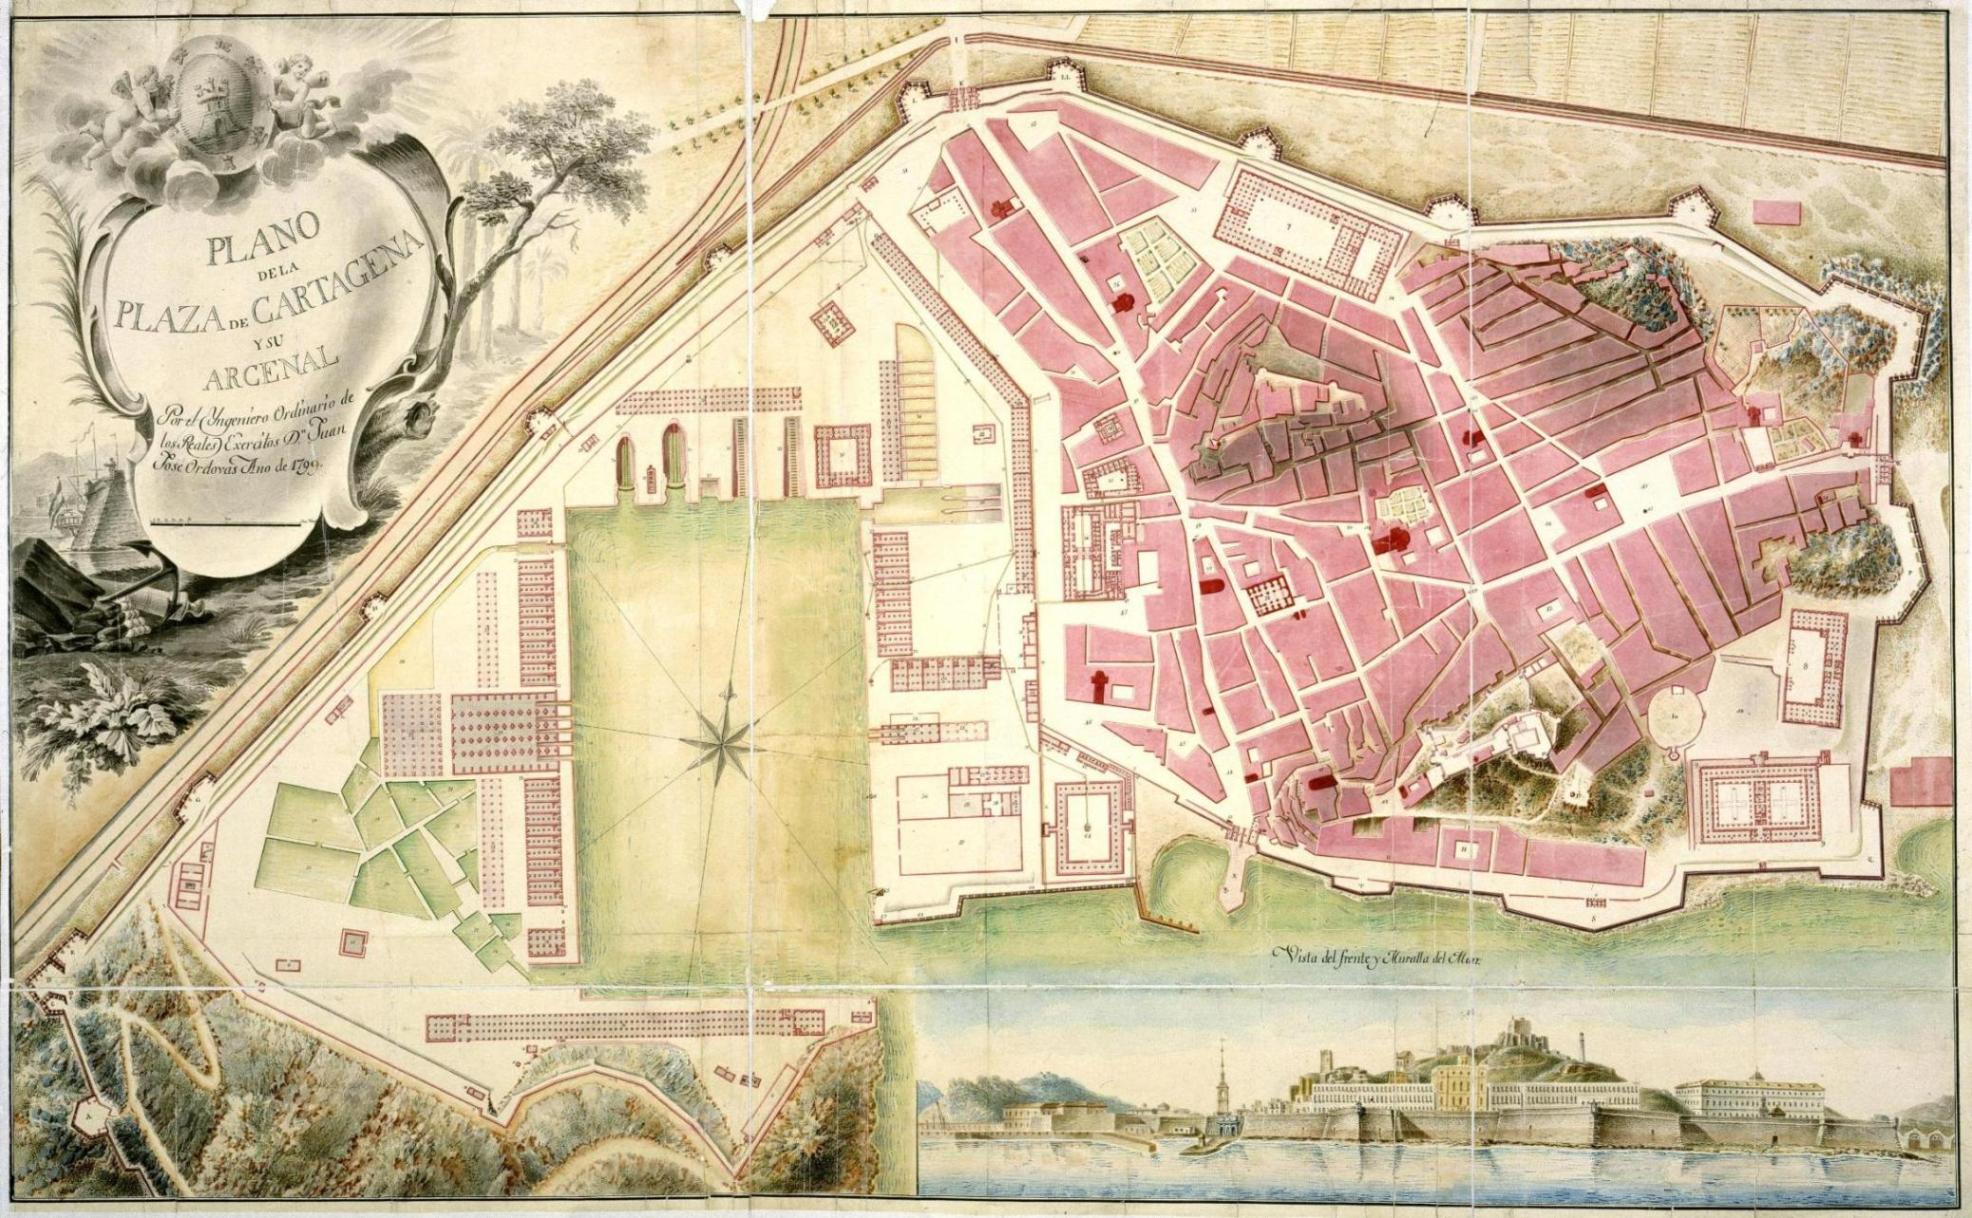 Plano de la Plaza de Cartagena y su Arcenal 1799